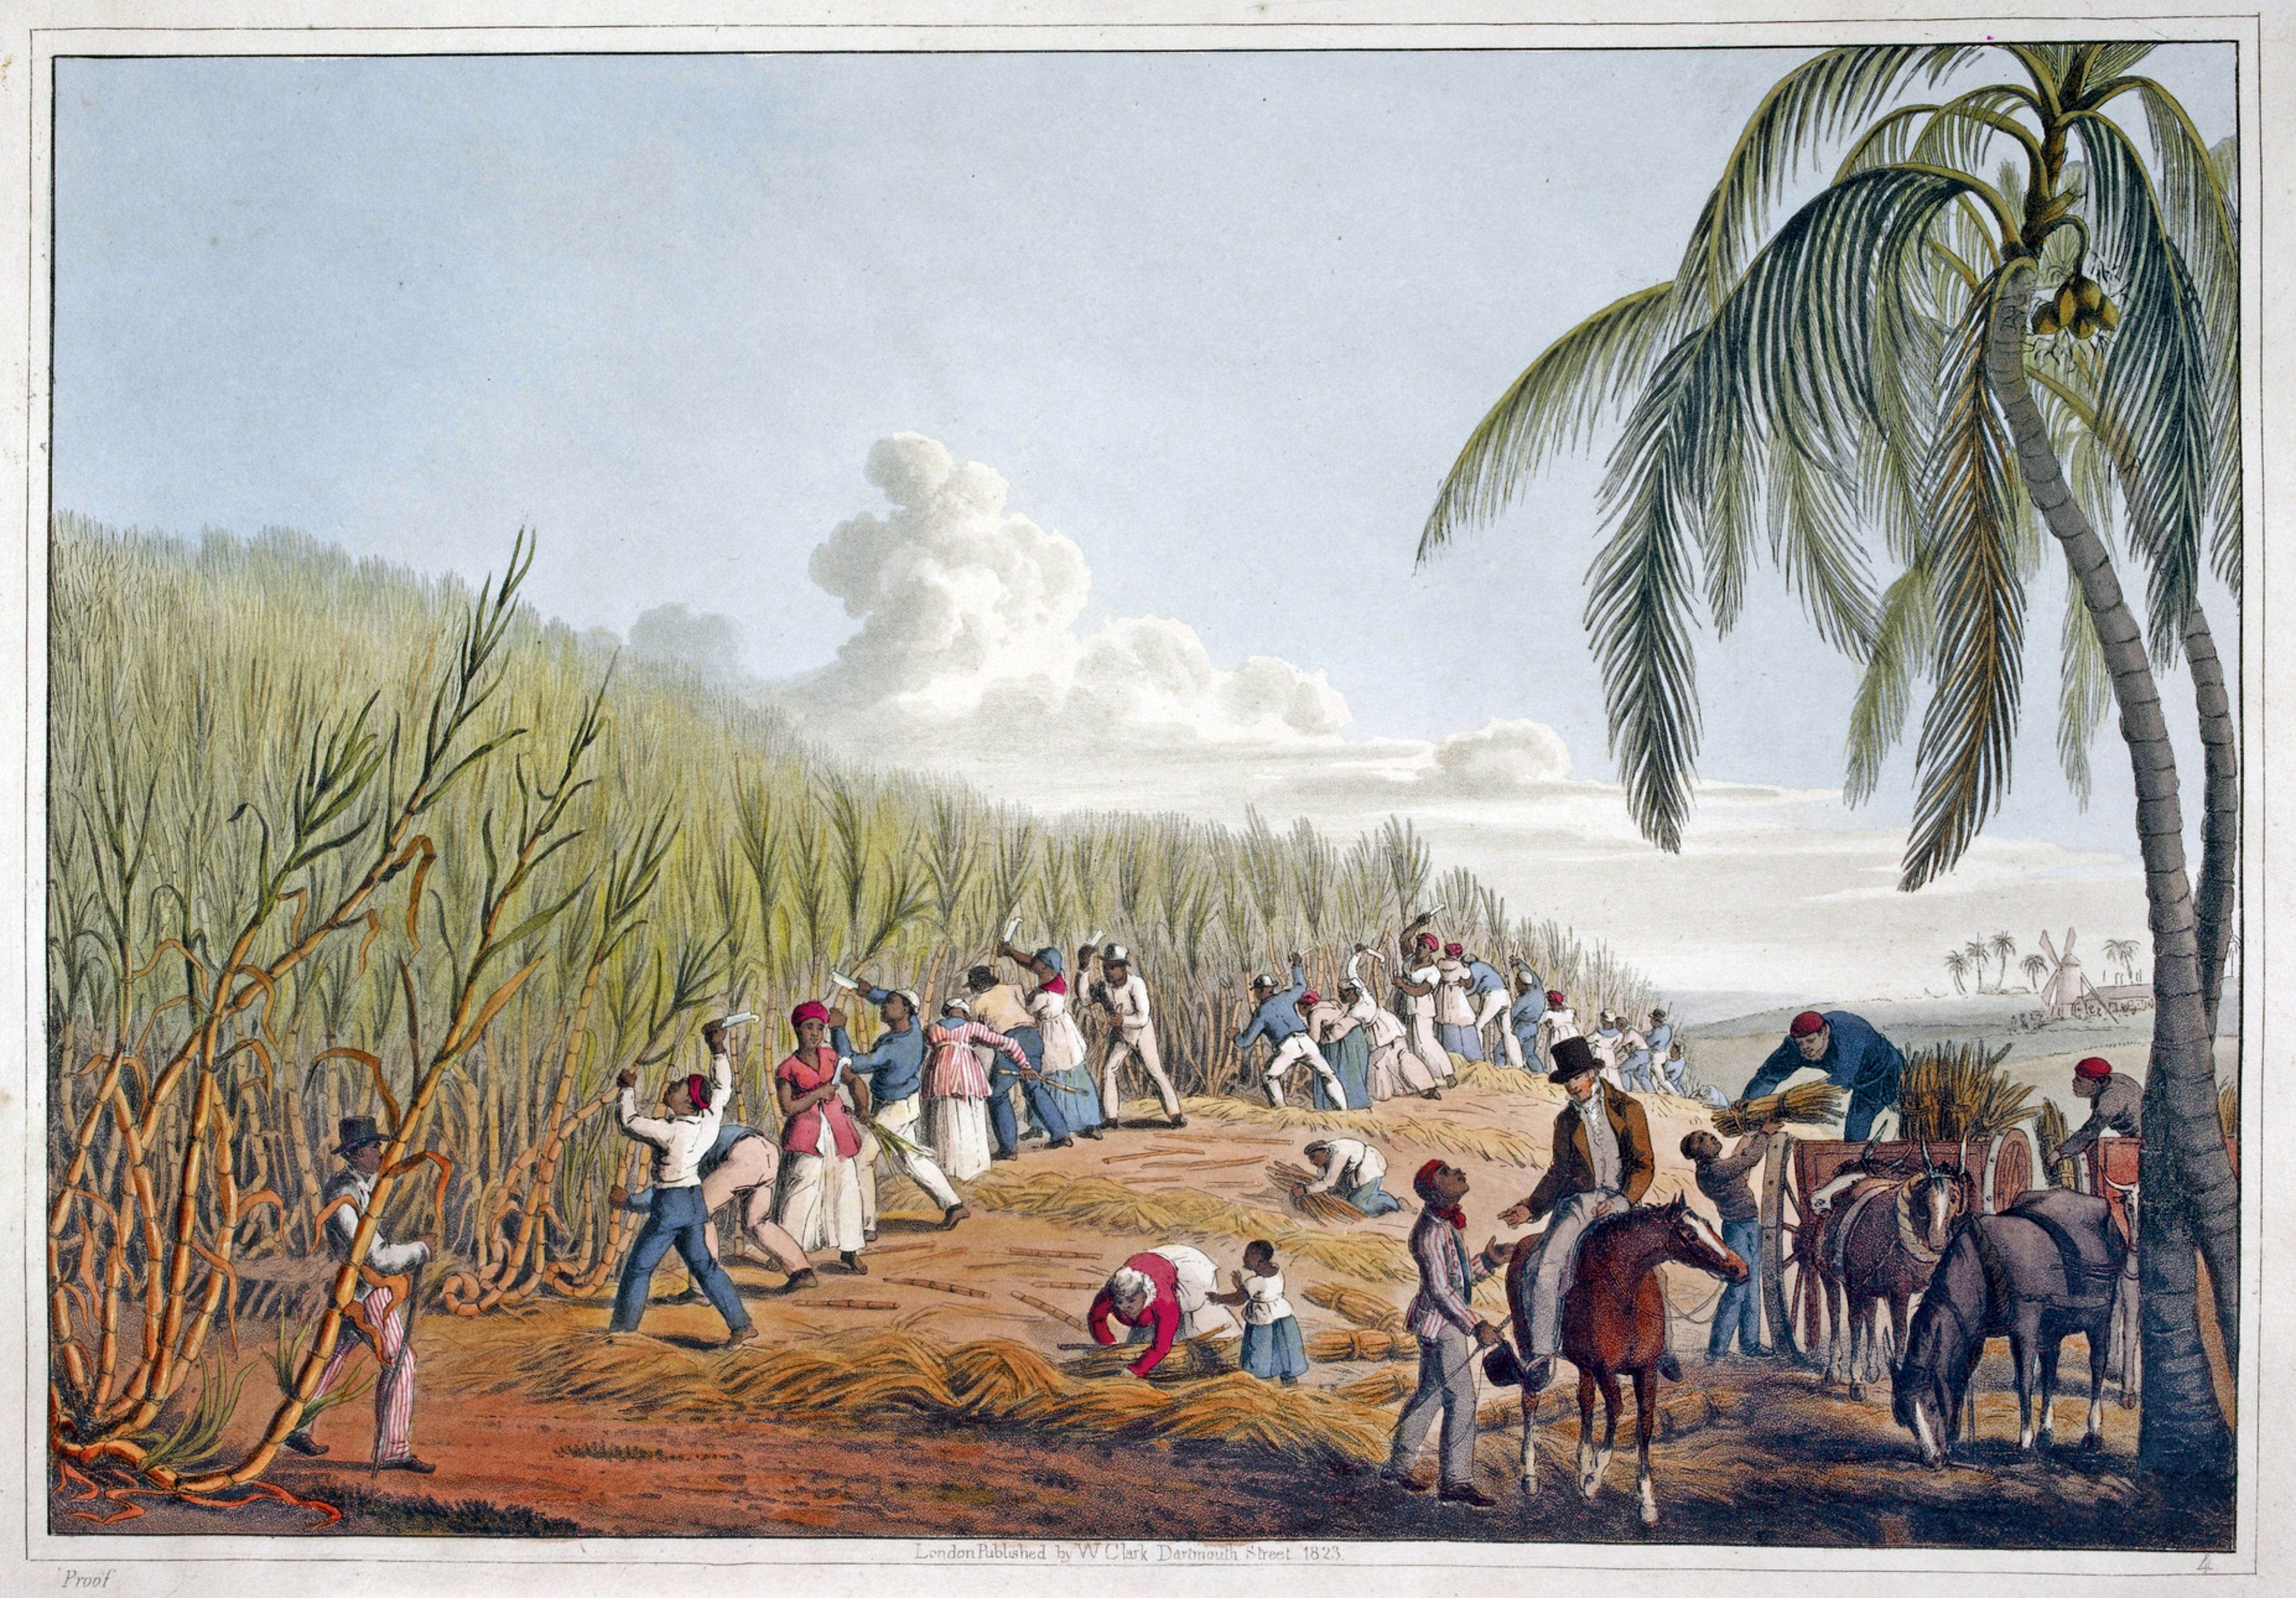 Czarni niewolnicy na plantacji trzciny cukrowej. Cukier był głównym
towarem wywożonym z Haiti, pod koniec XVIII wieku we francuskiej
części wyspy funkcjonowało prawie 800 plantacji trzciny cukrowe. Fot. Wikimedia Commons